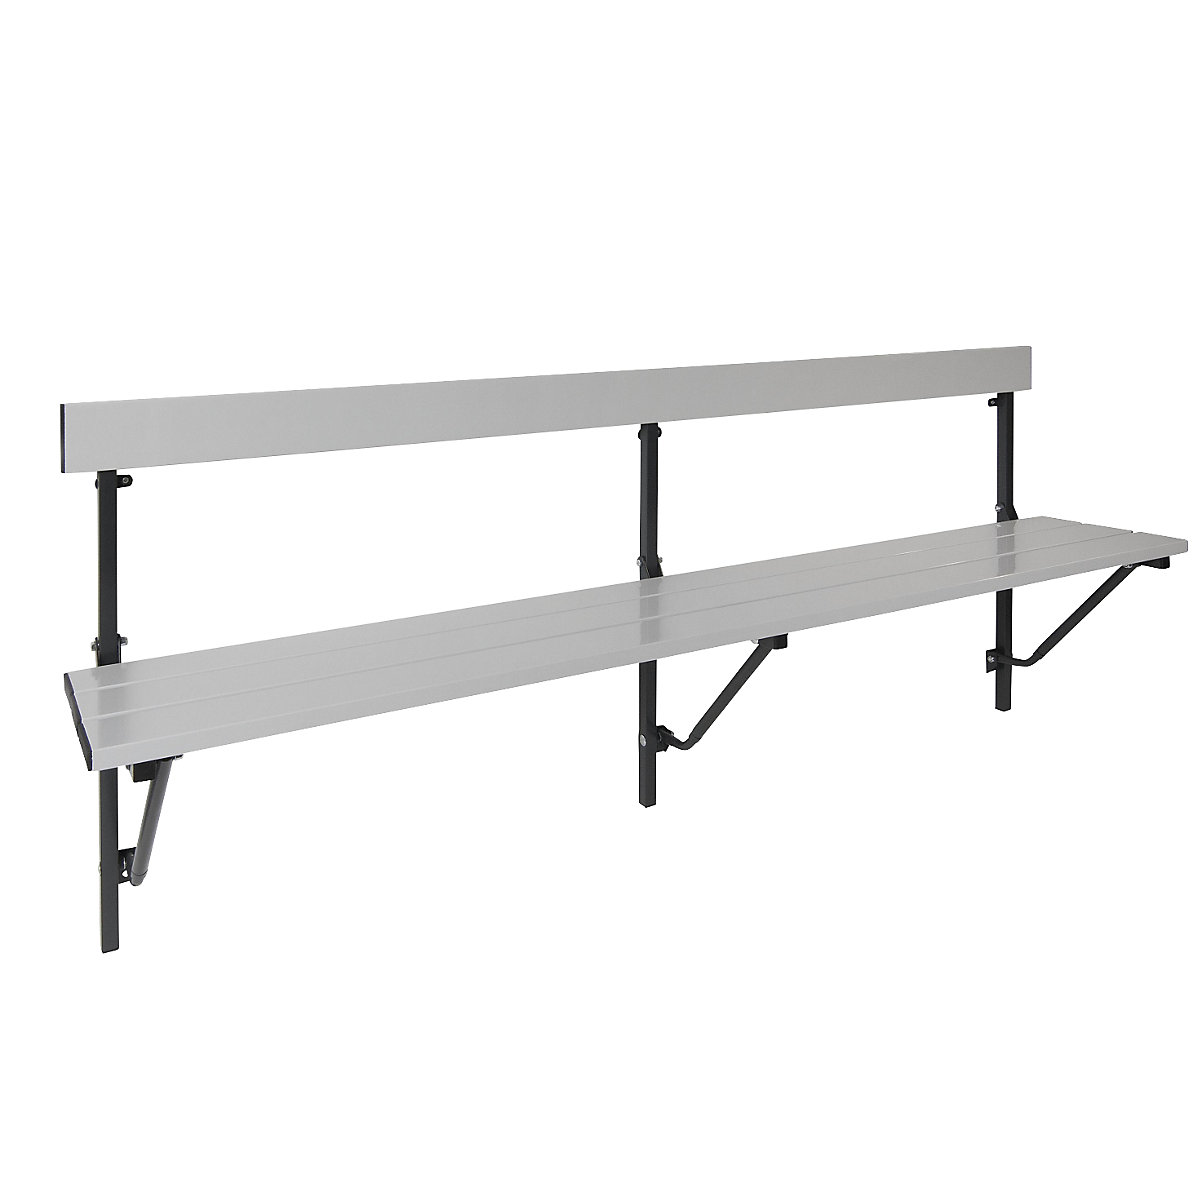 Sypro – Folding wall-mounted bench, folding, fixed length 2000 mm, with aluminium slats